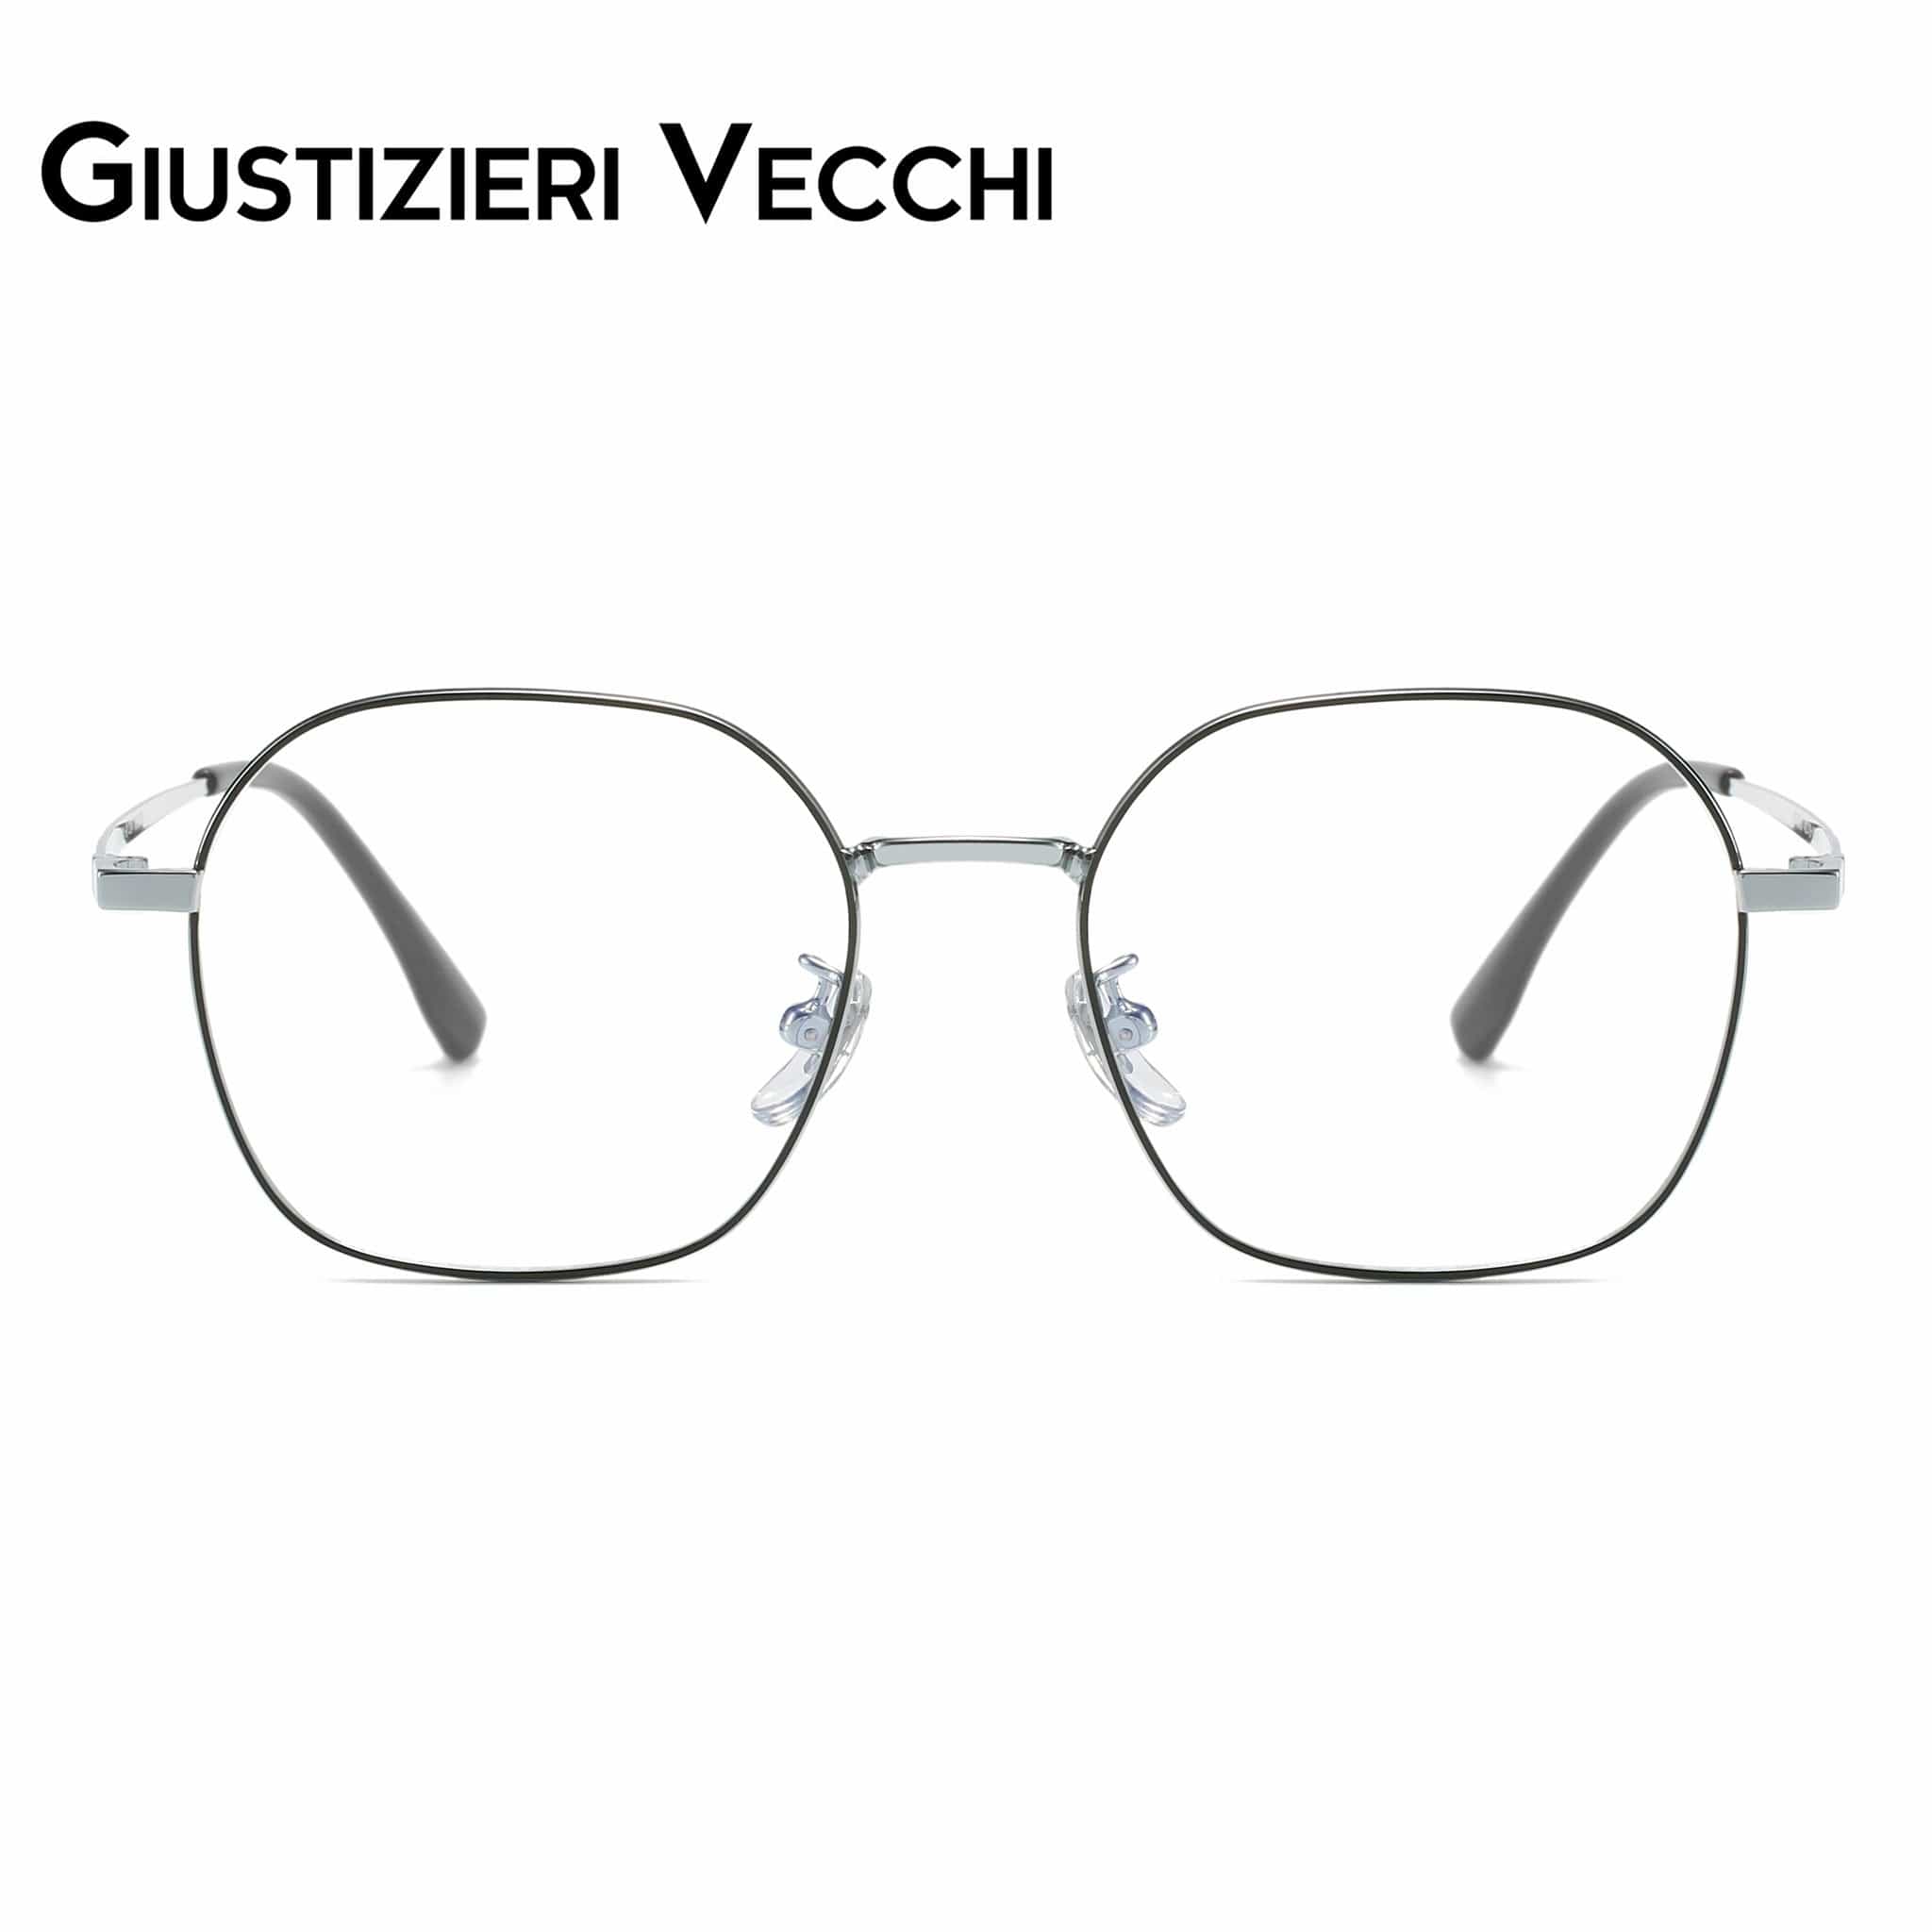 GIUSTIZIERI VECCHI Eyeglasses Black with Grey / Small Mystic Mist Uno